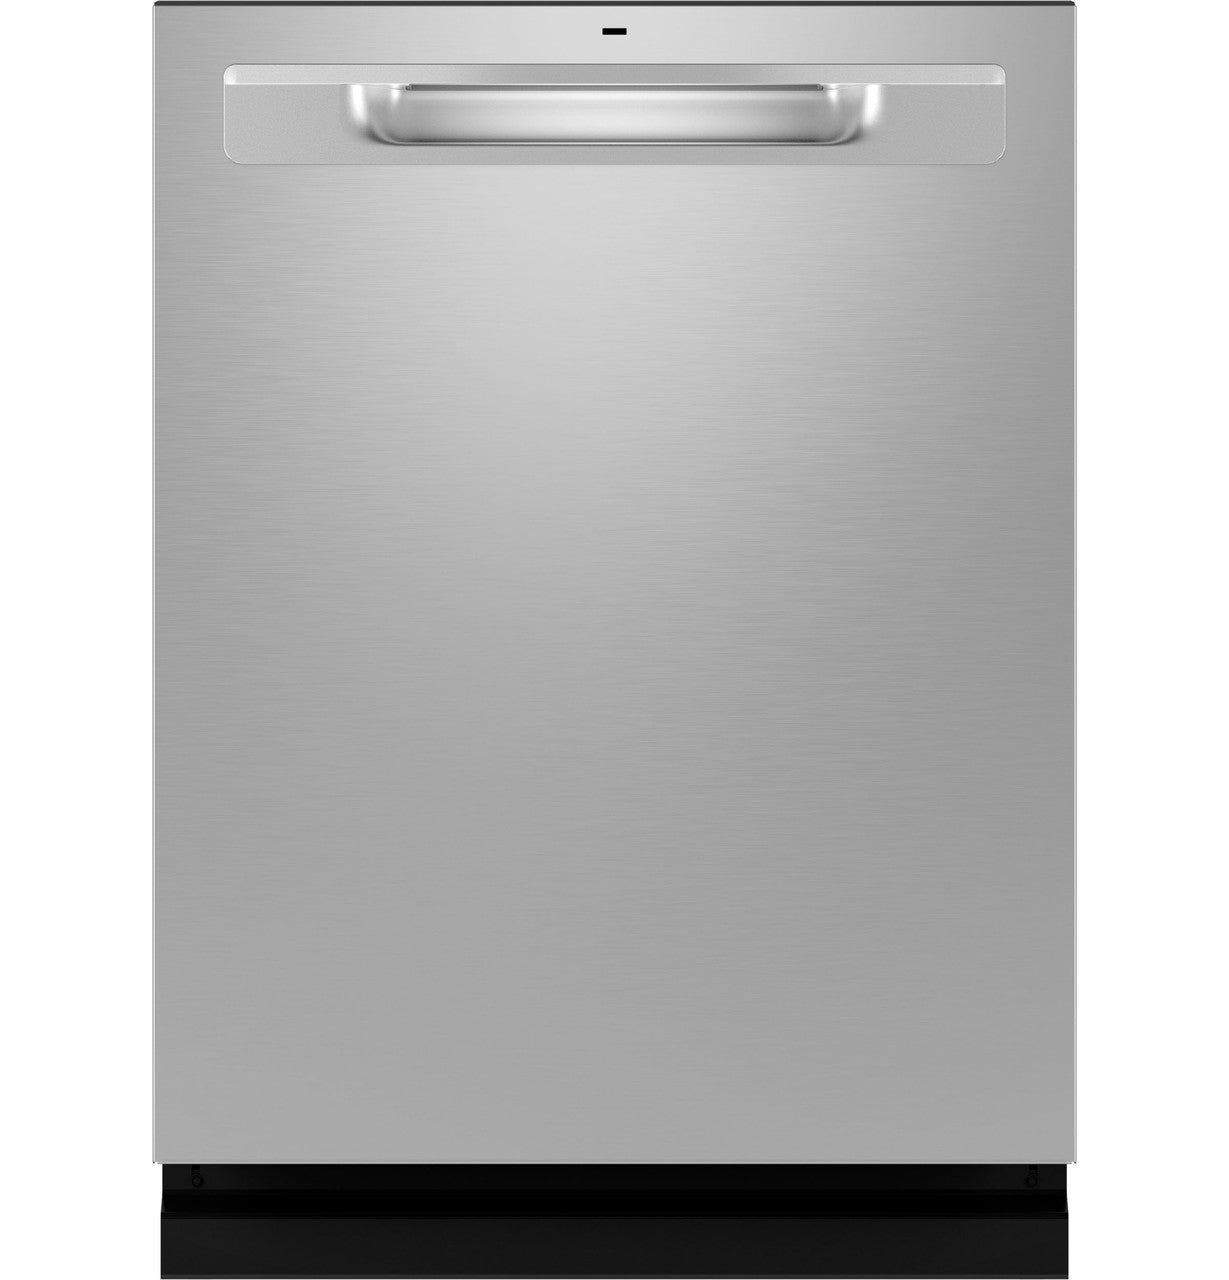 GE ENERGY STAR Fingerprint Resistant Top Control Dishwasher - GDP670SYVFS